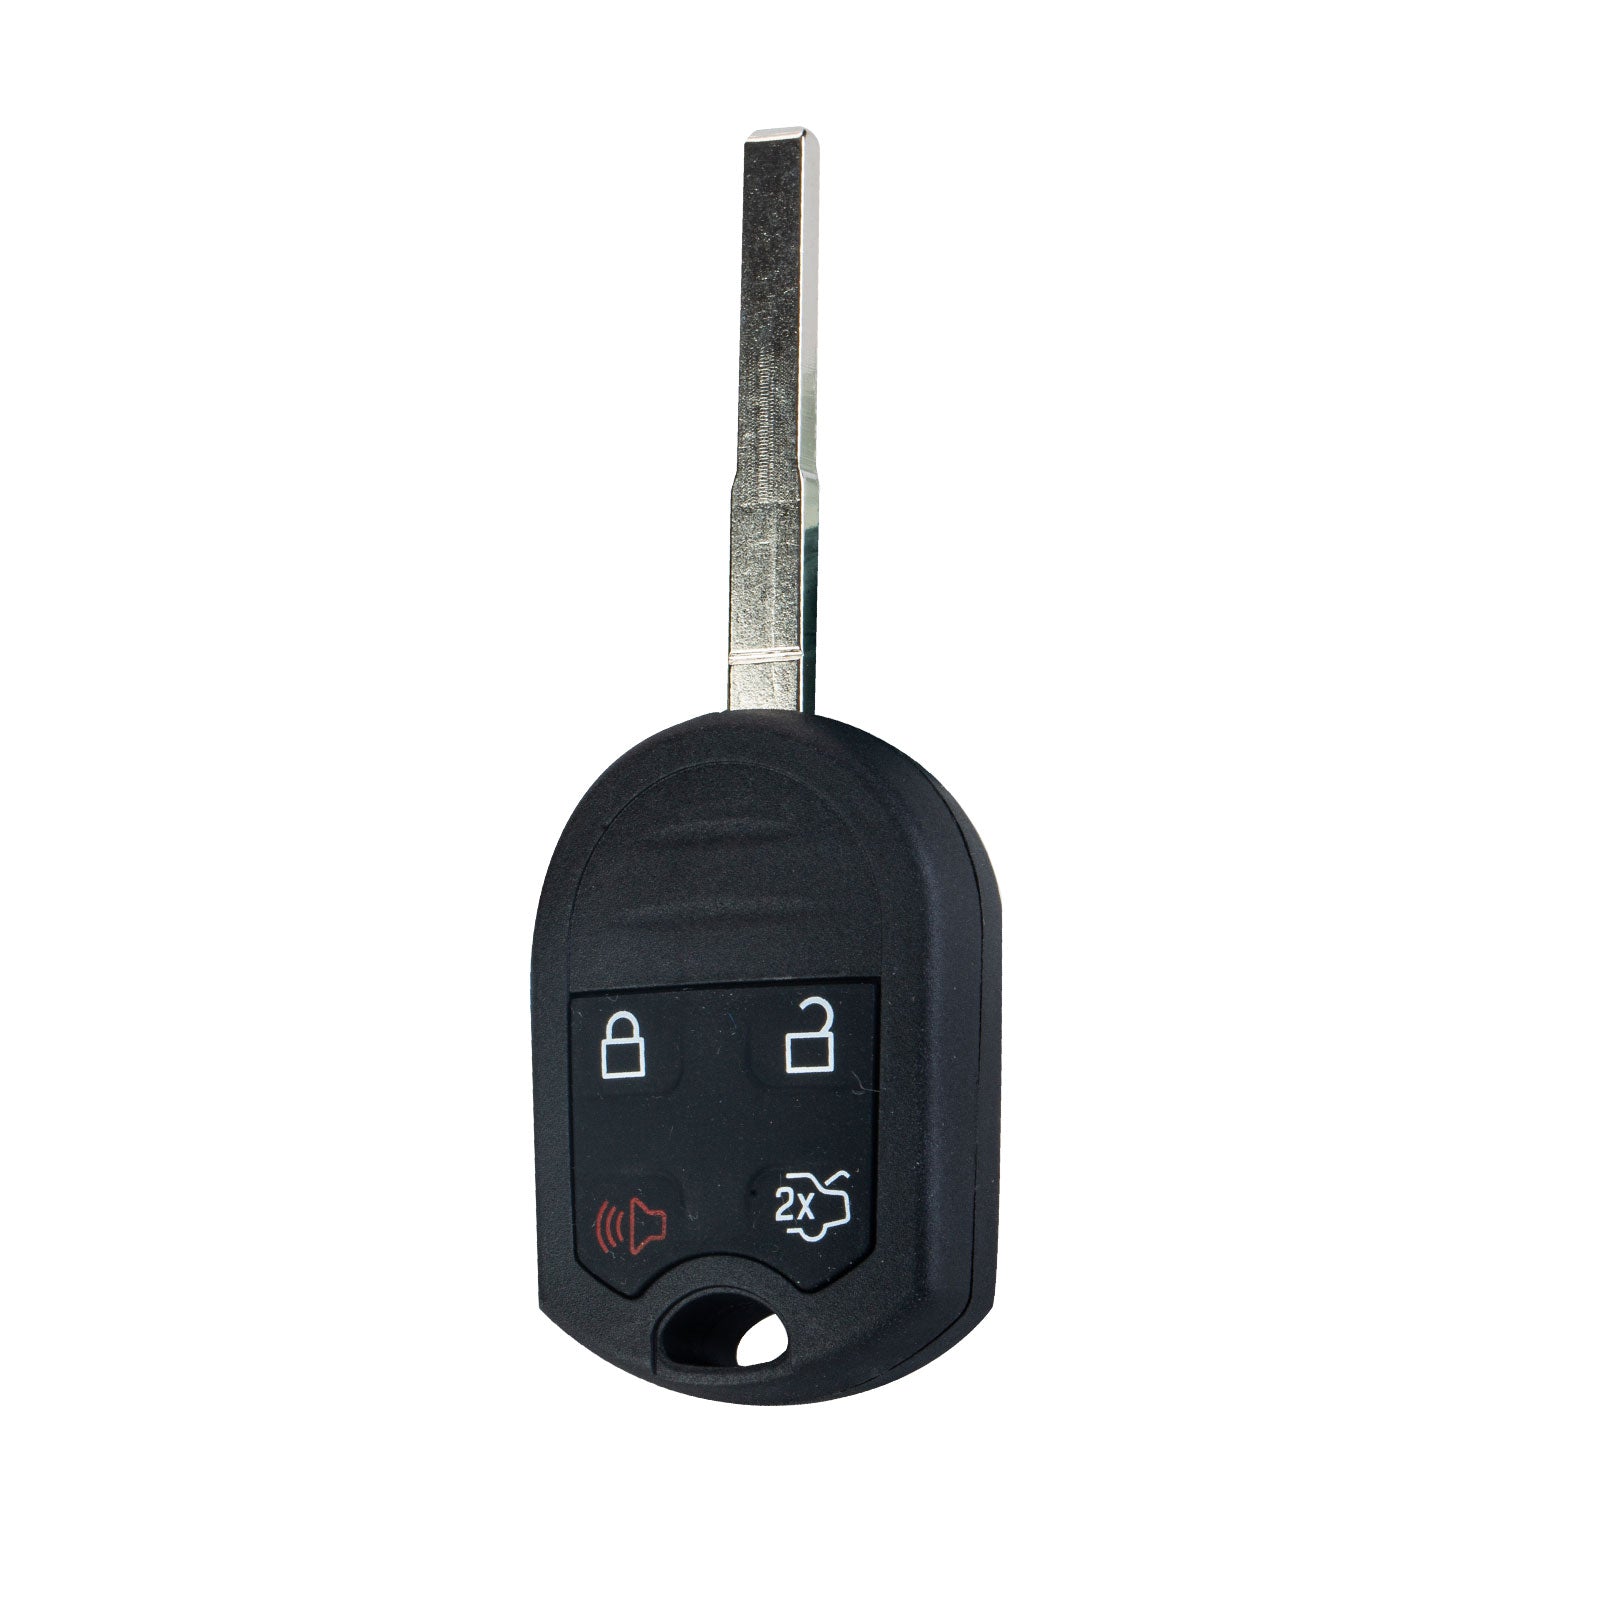 4 BTN Car Key Fob 315 MHz Replacement for 2011-2016 Ford Fiesta Keyless Entry Remote CWTWB1U793 164-R7976  KR-F4SD